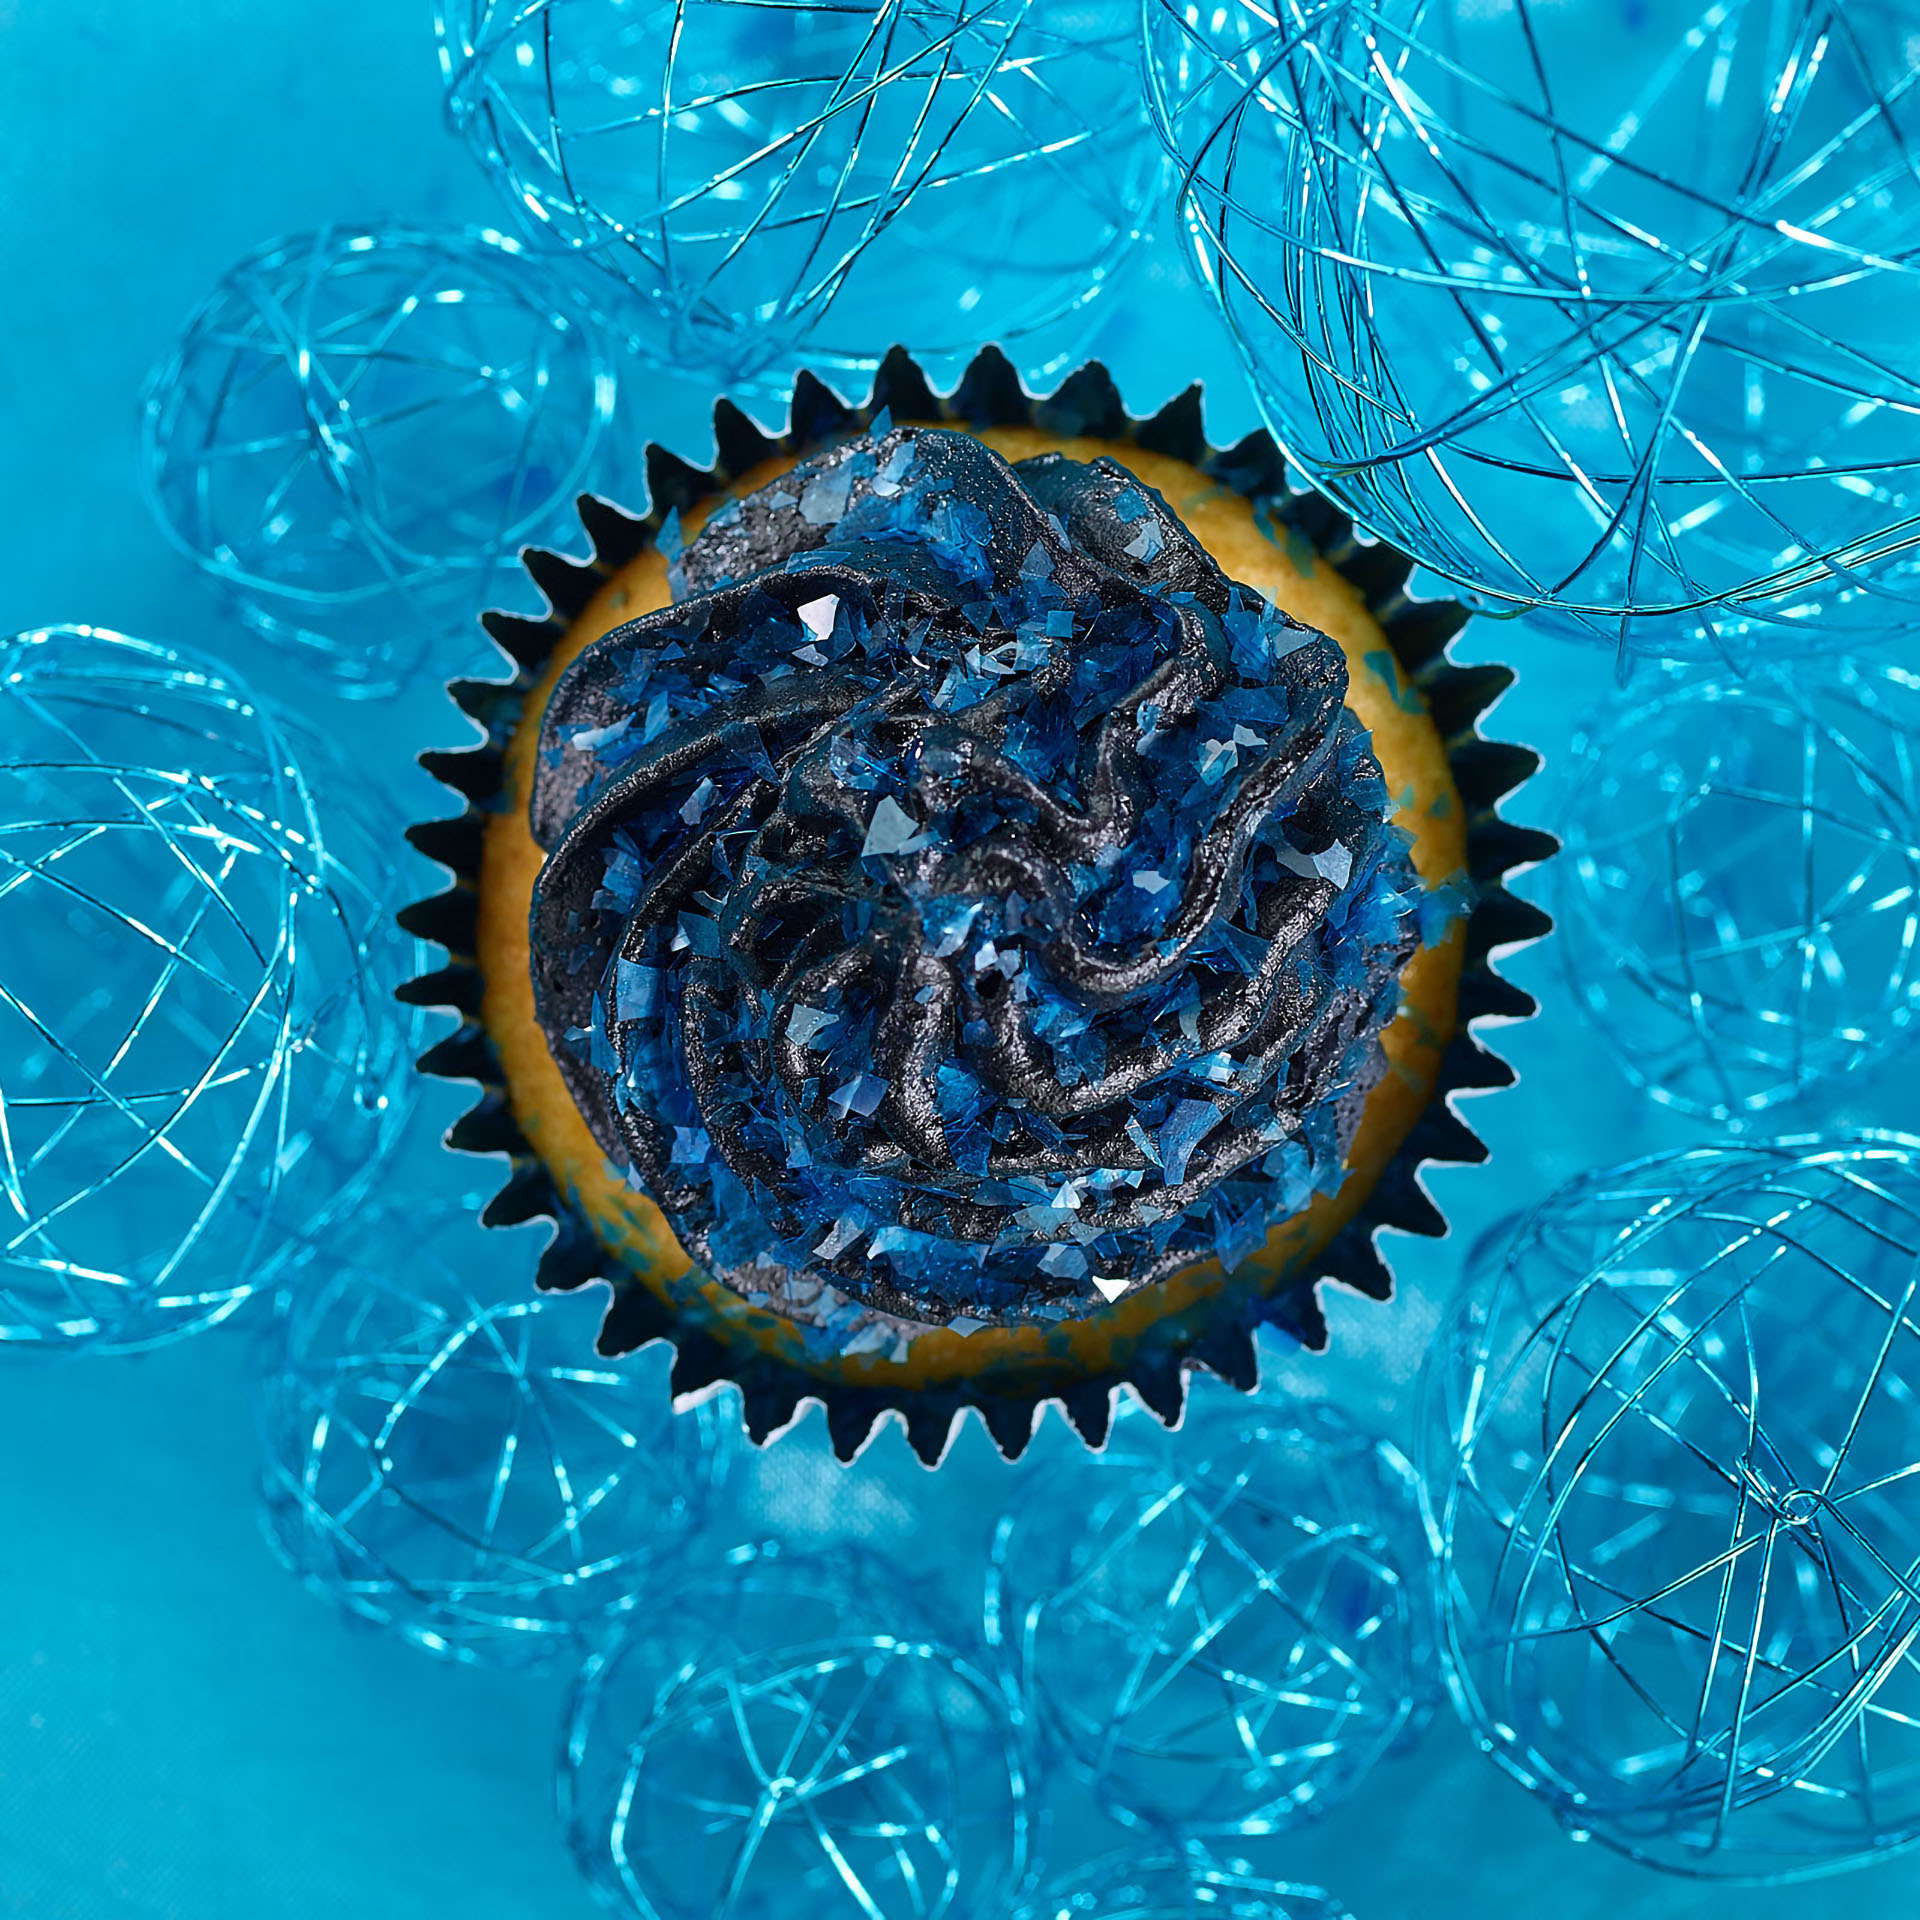 Fotodesign-matthias-schütz-muffin-shredder-blau